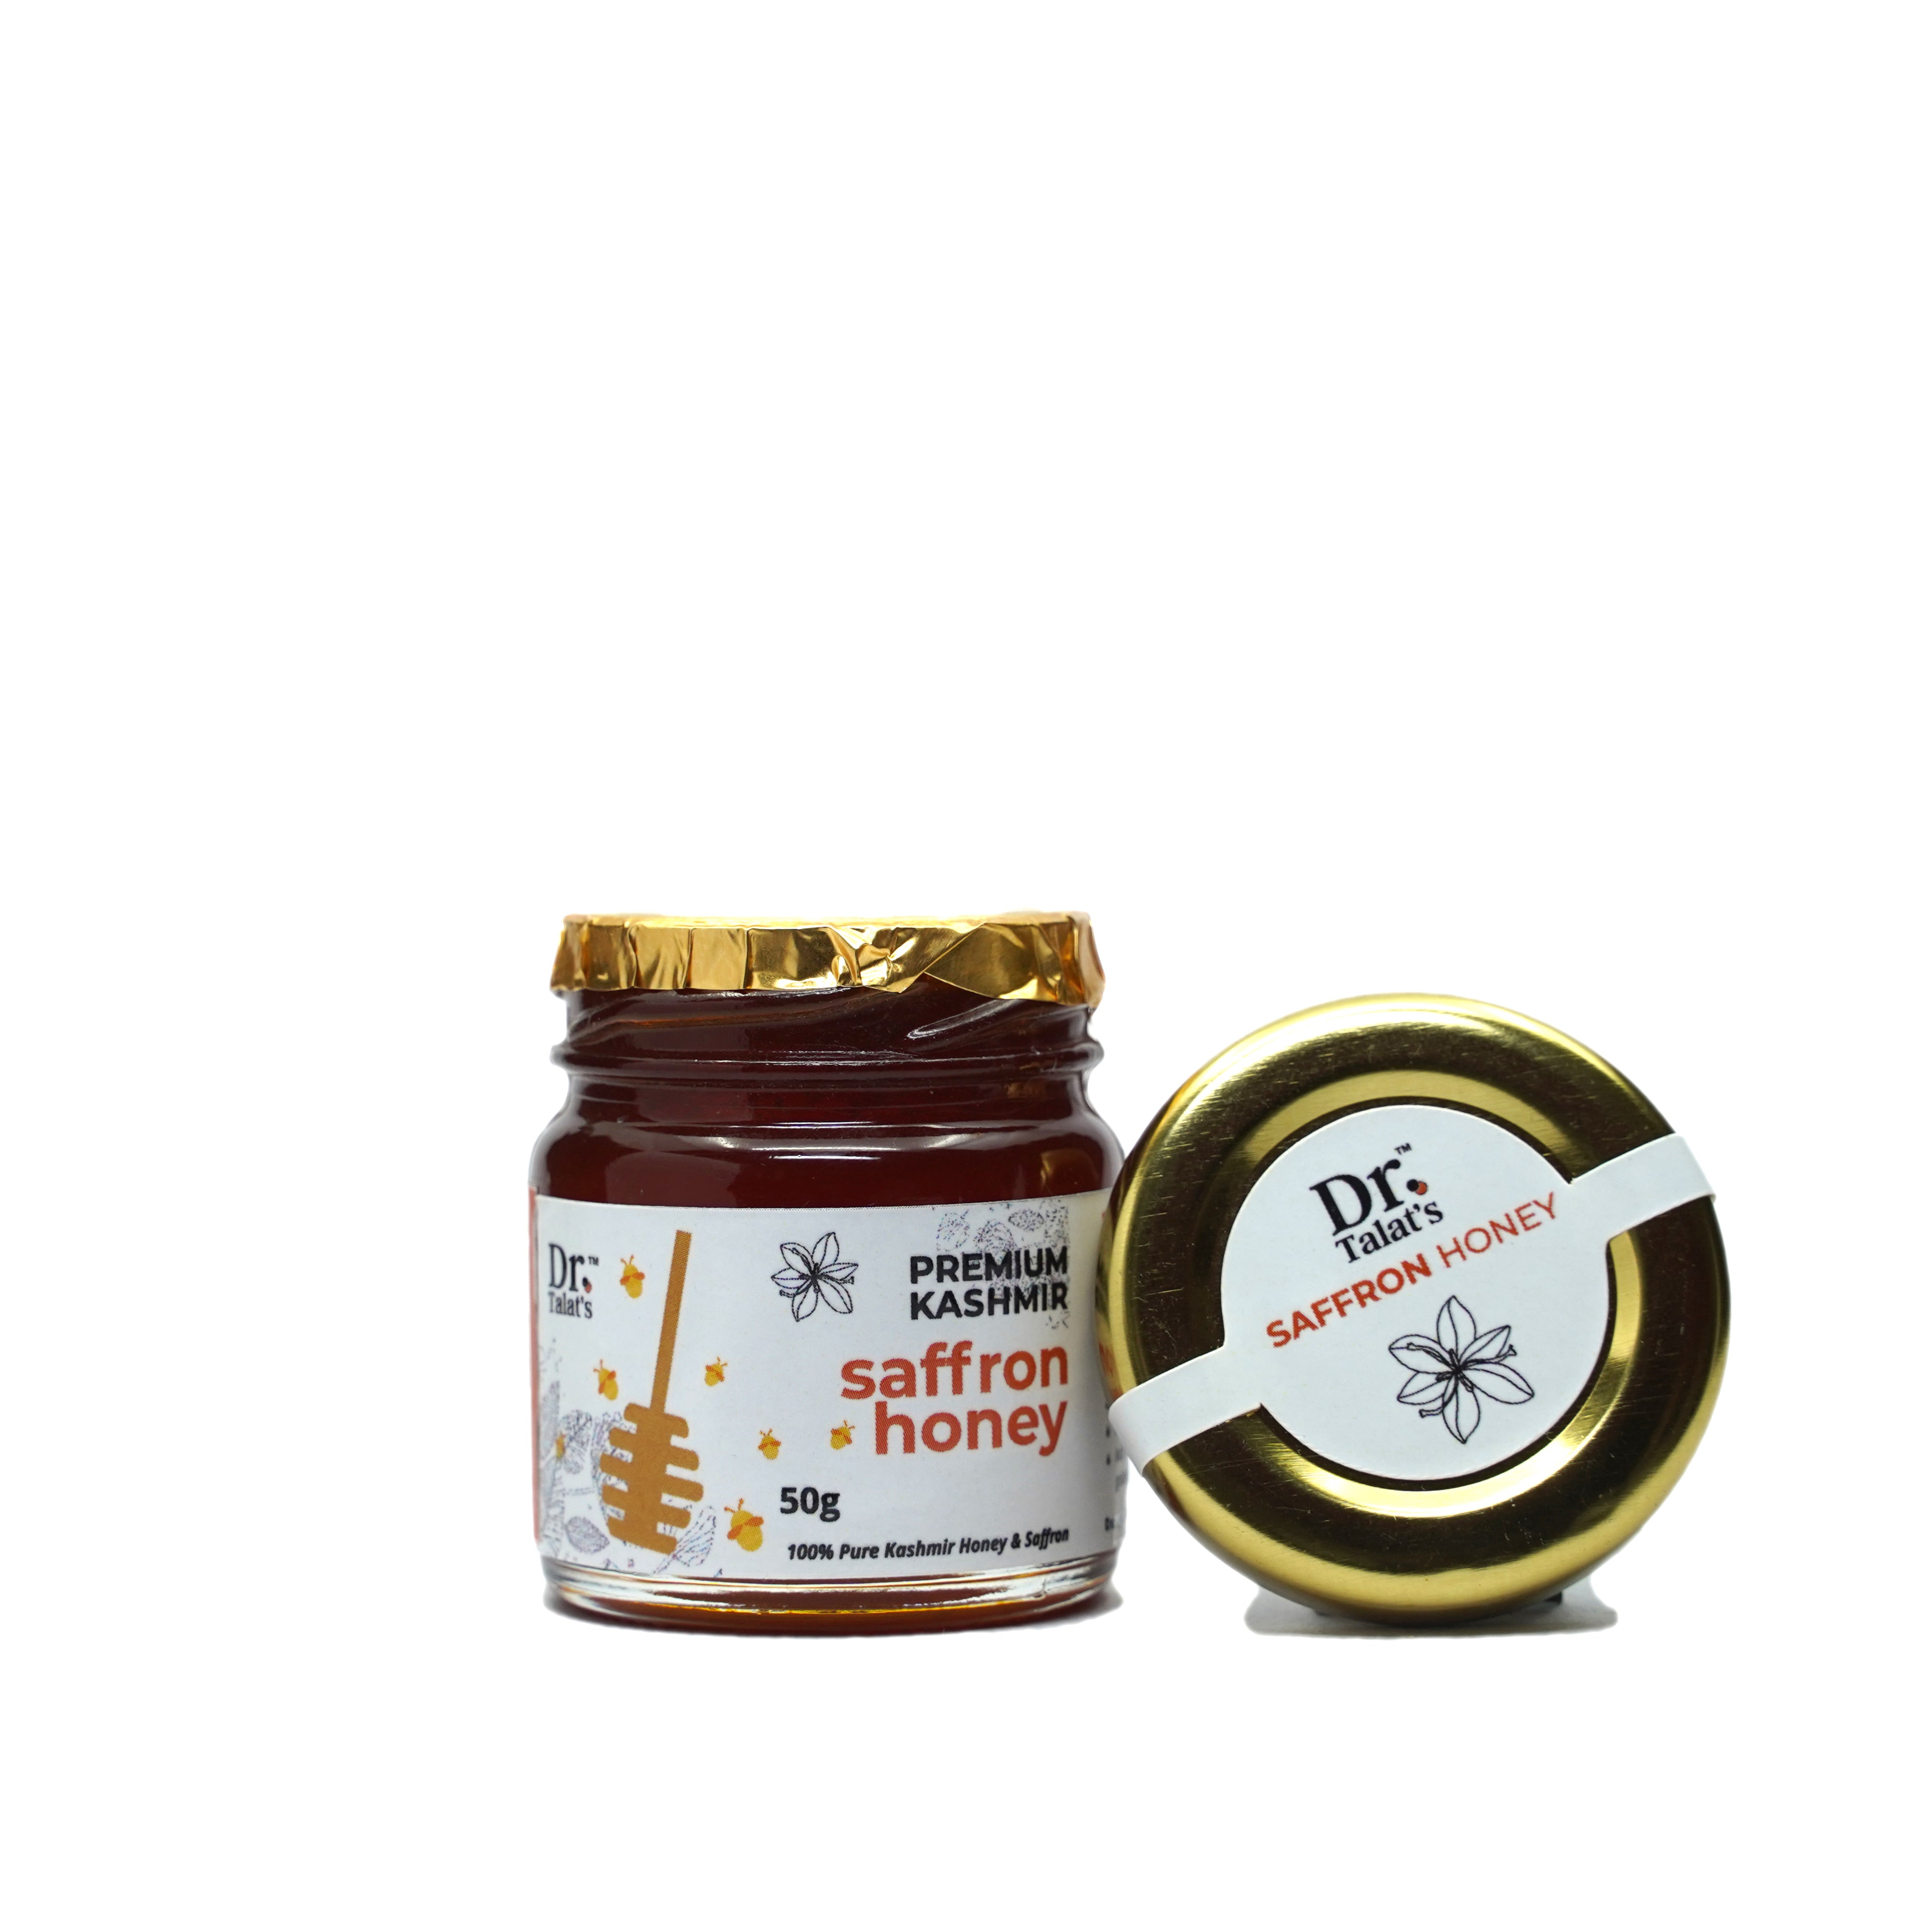 Premium Kashmir Saffron Honey